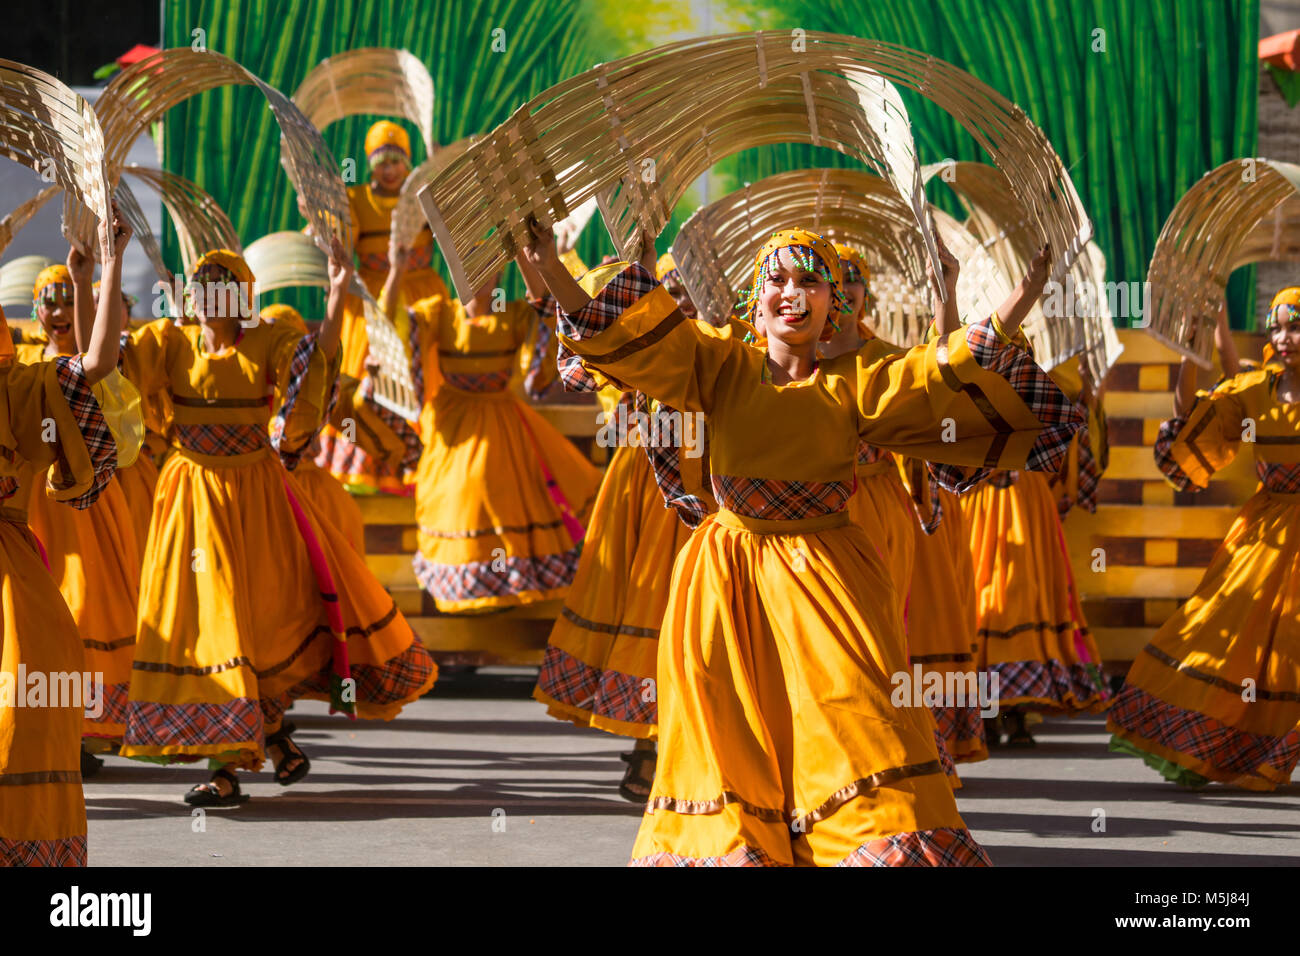 Kasadyahan fait partie de l'Dinagyang Festival organisé chaque année à Iloilo, Philippines.Cet événement célèbre les aspects culturels de la région.H Banque D'Images